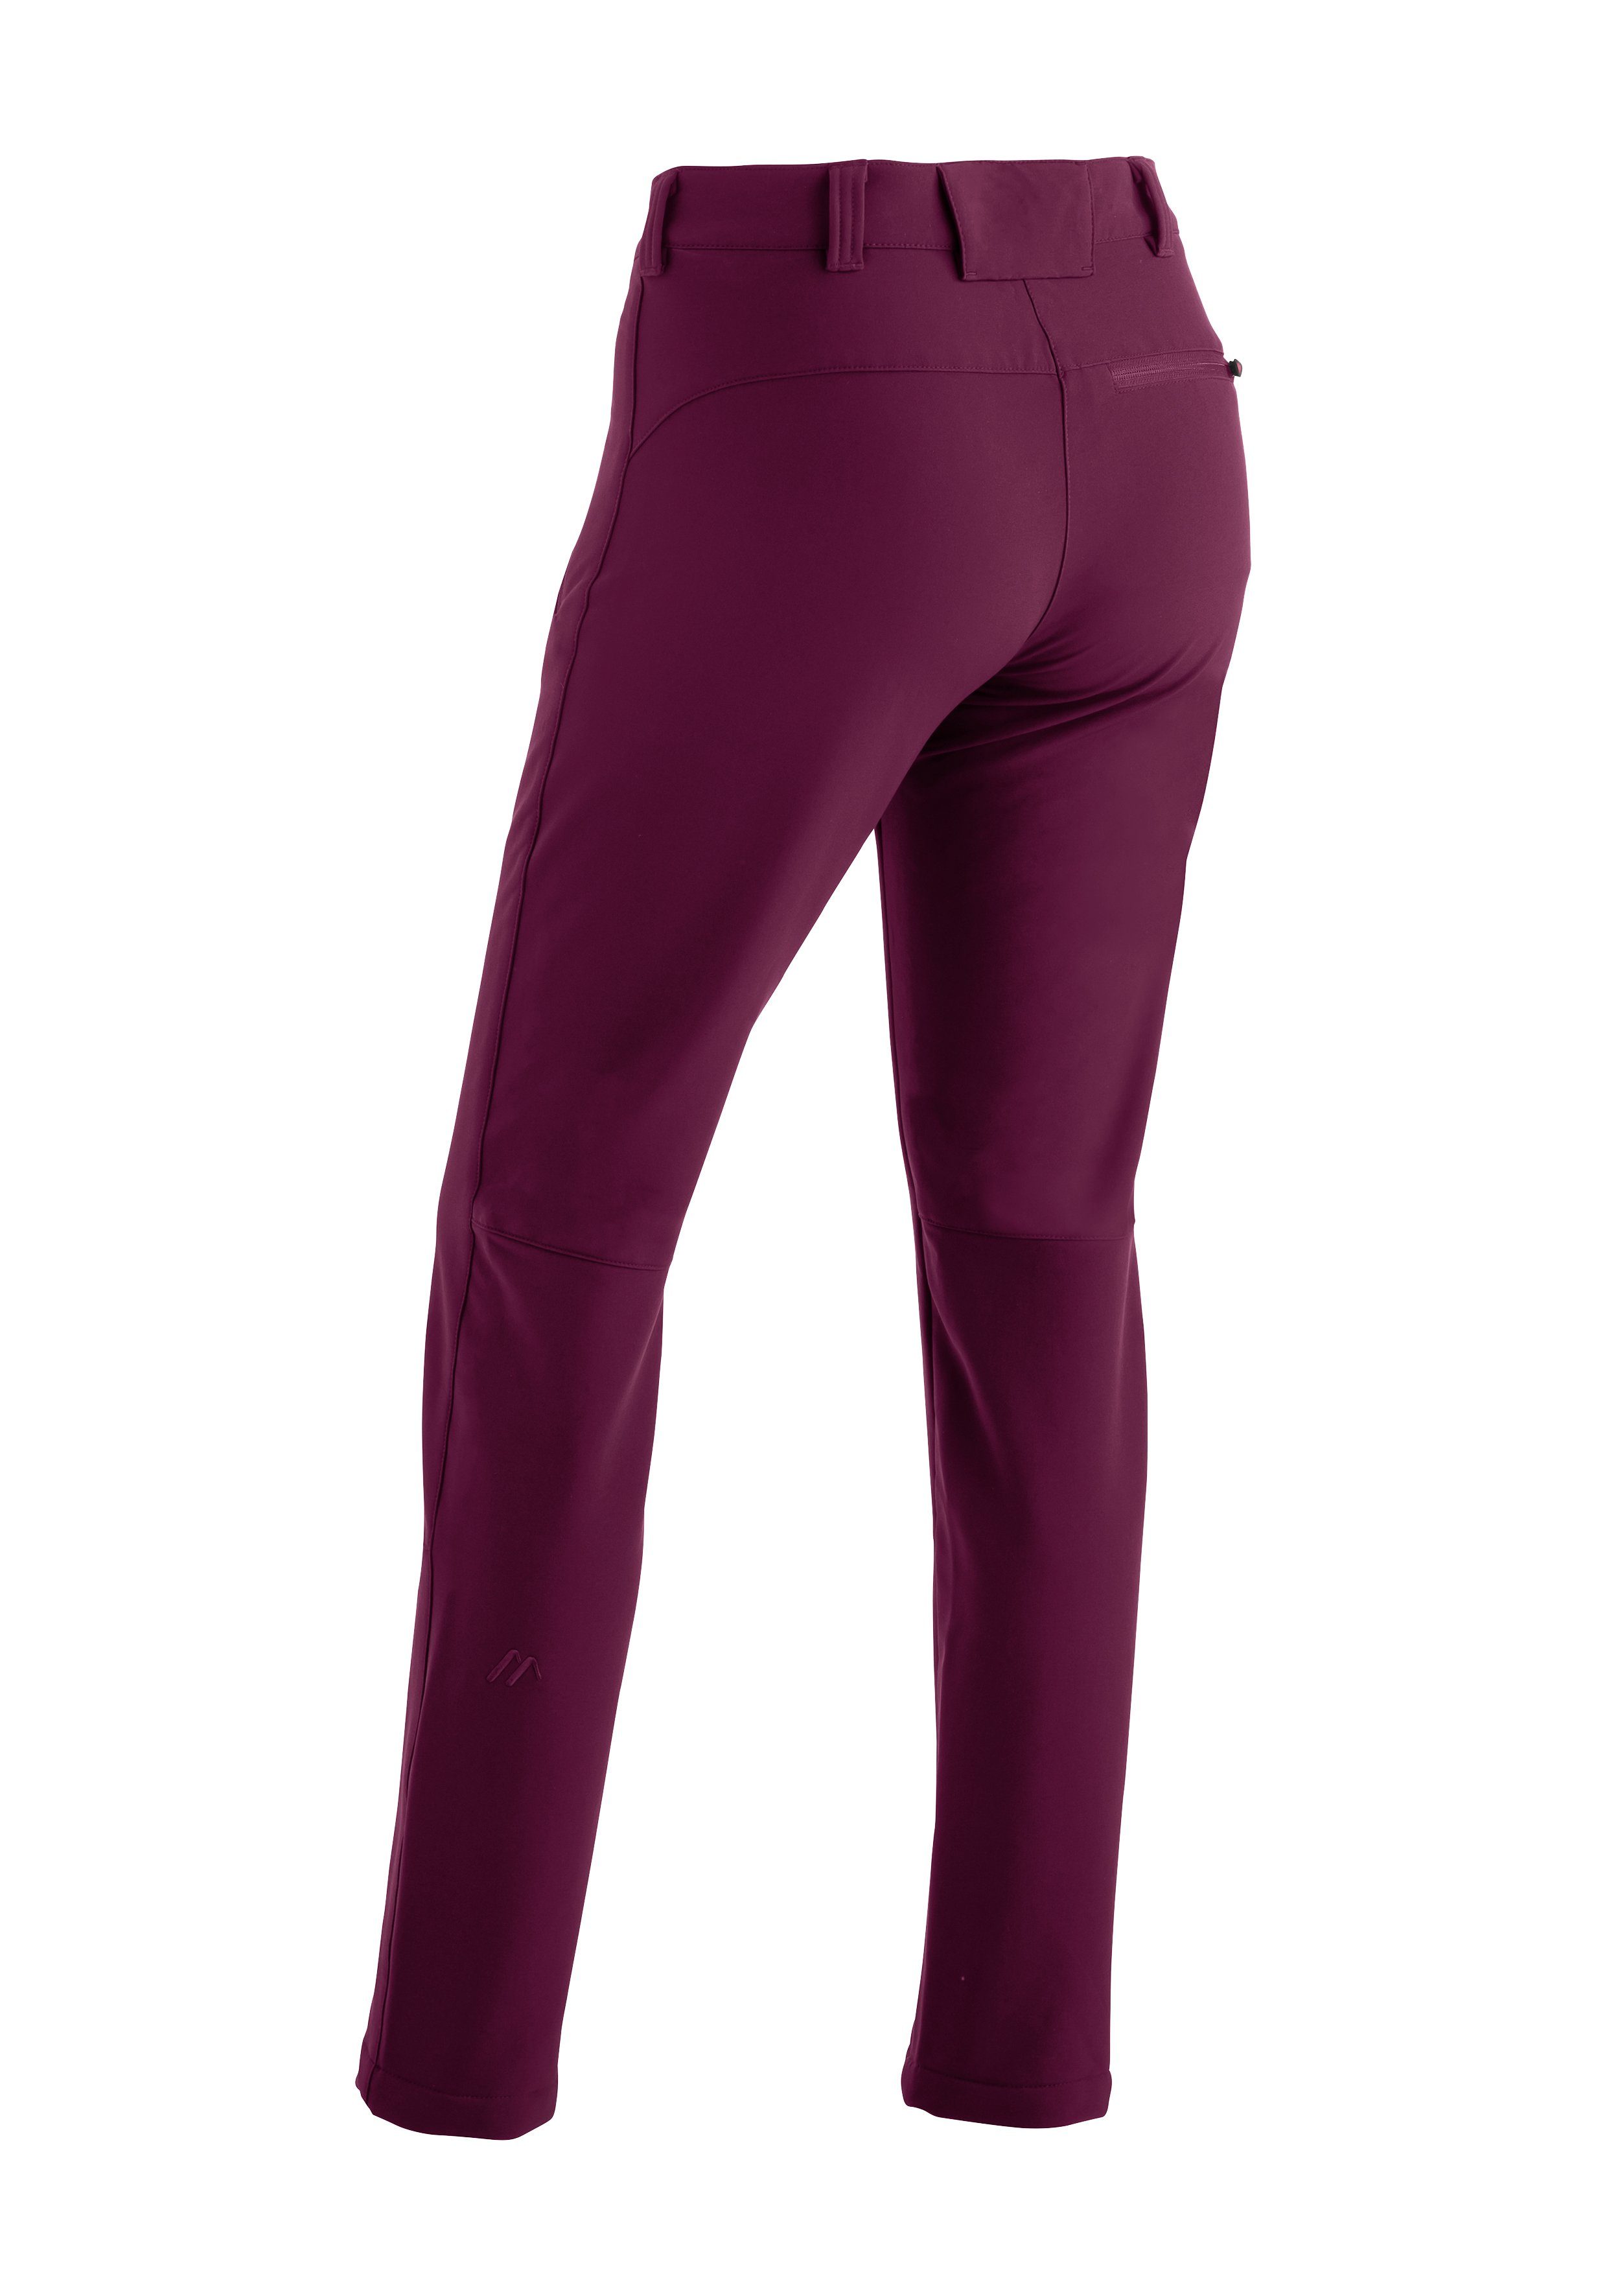 Maier Sports Functionele broek Helga slim fit winter-outdoorbroek zeer elastisch